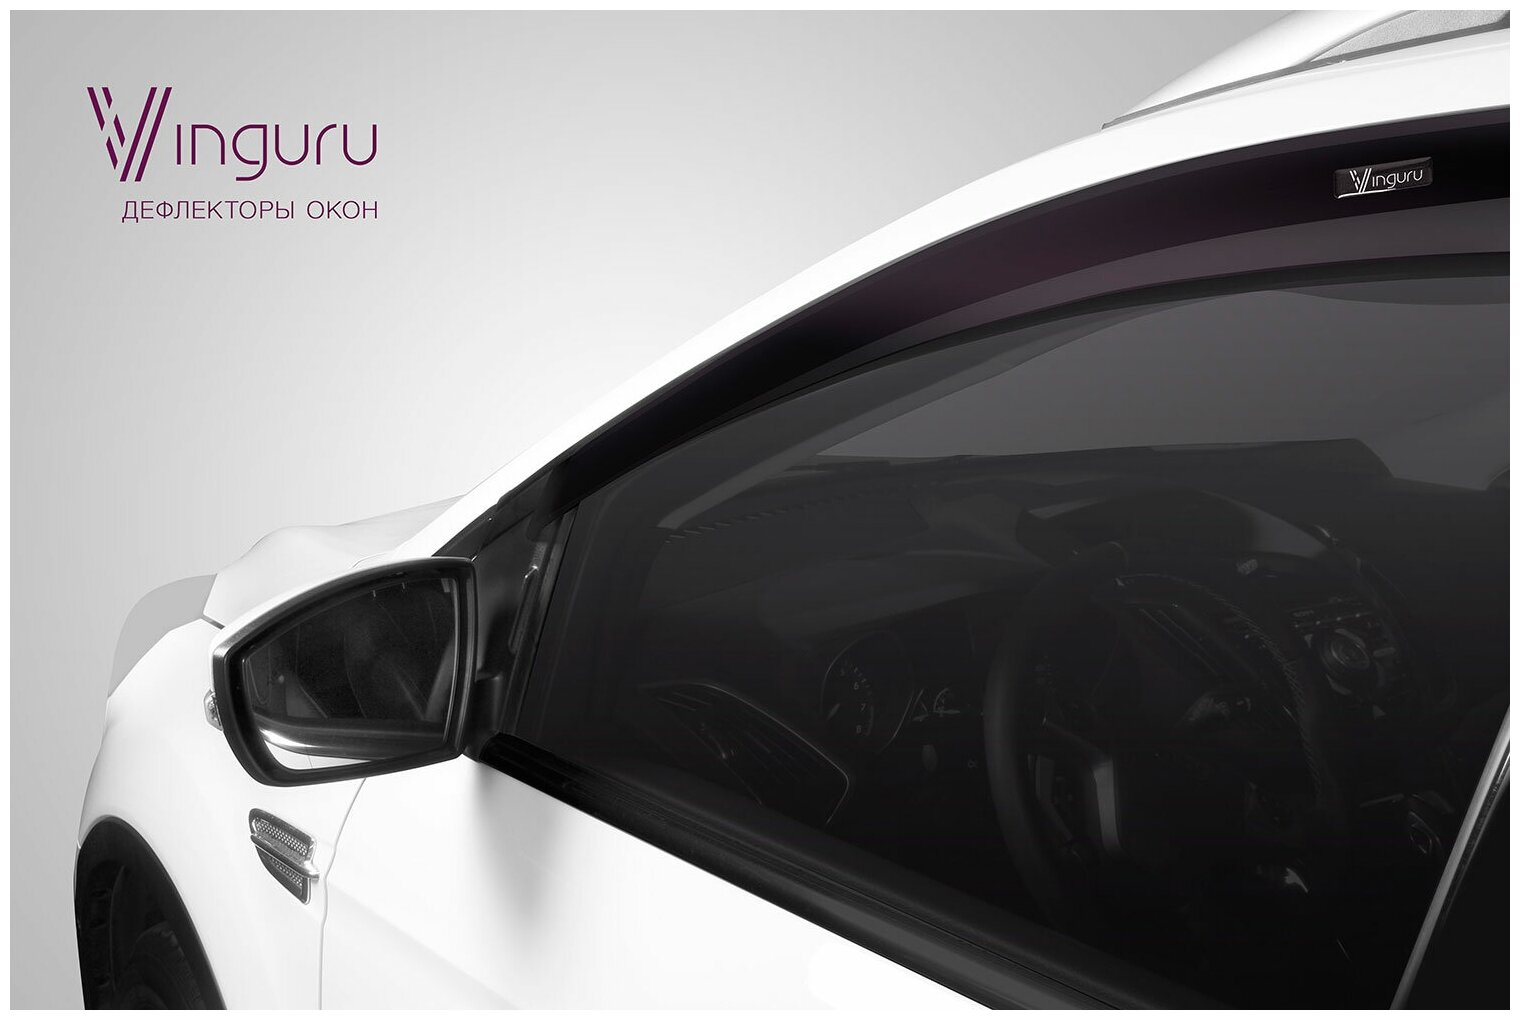 Дефлекторы окон Vinguru Nissan Qashqai II 2013- крос накладные литьевой поликарбонат скотч 4 шт - фото №4